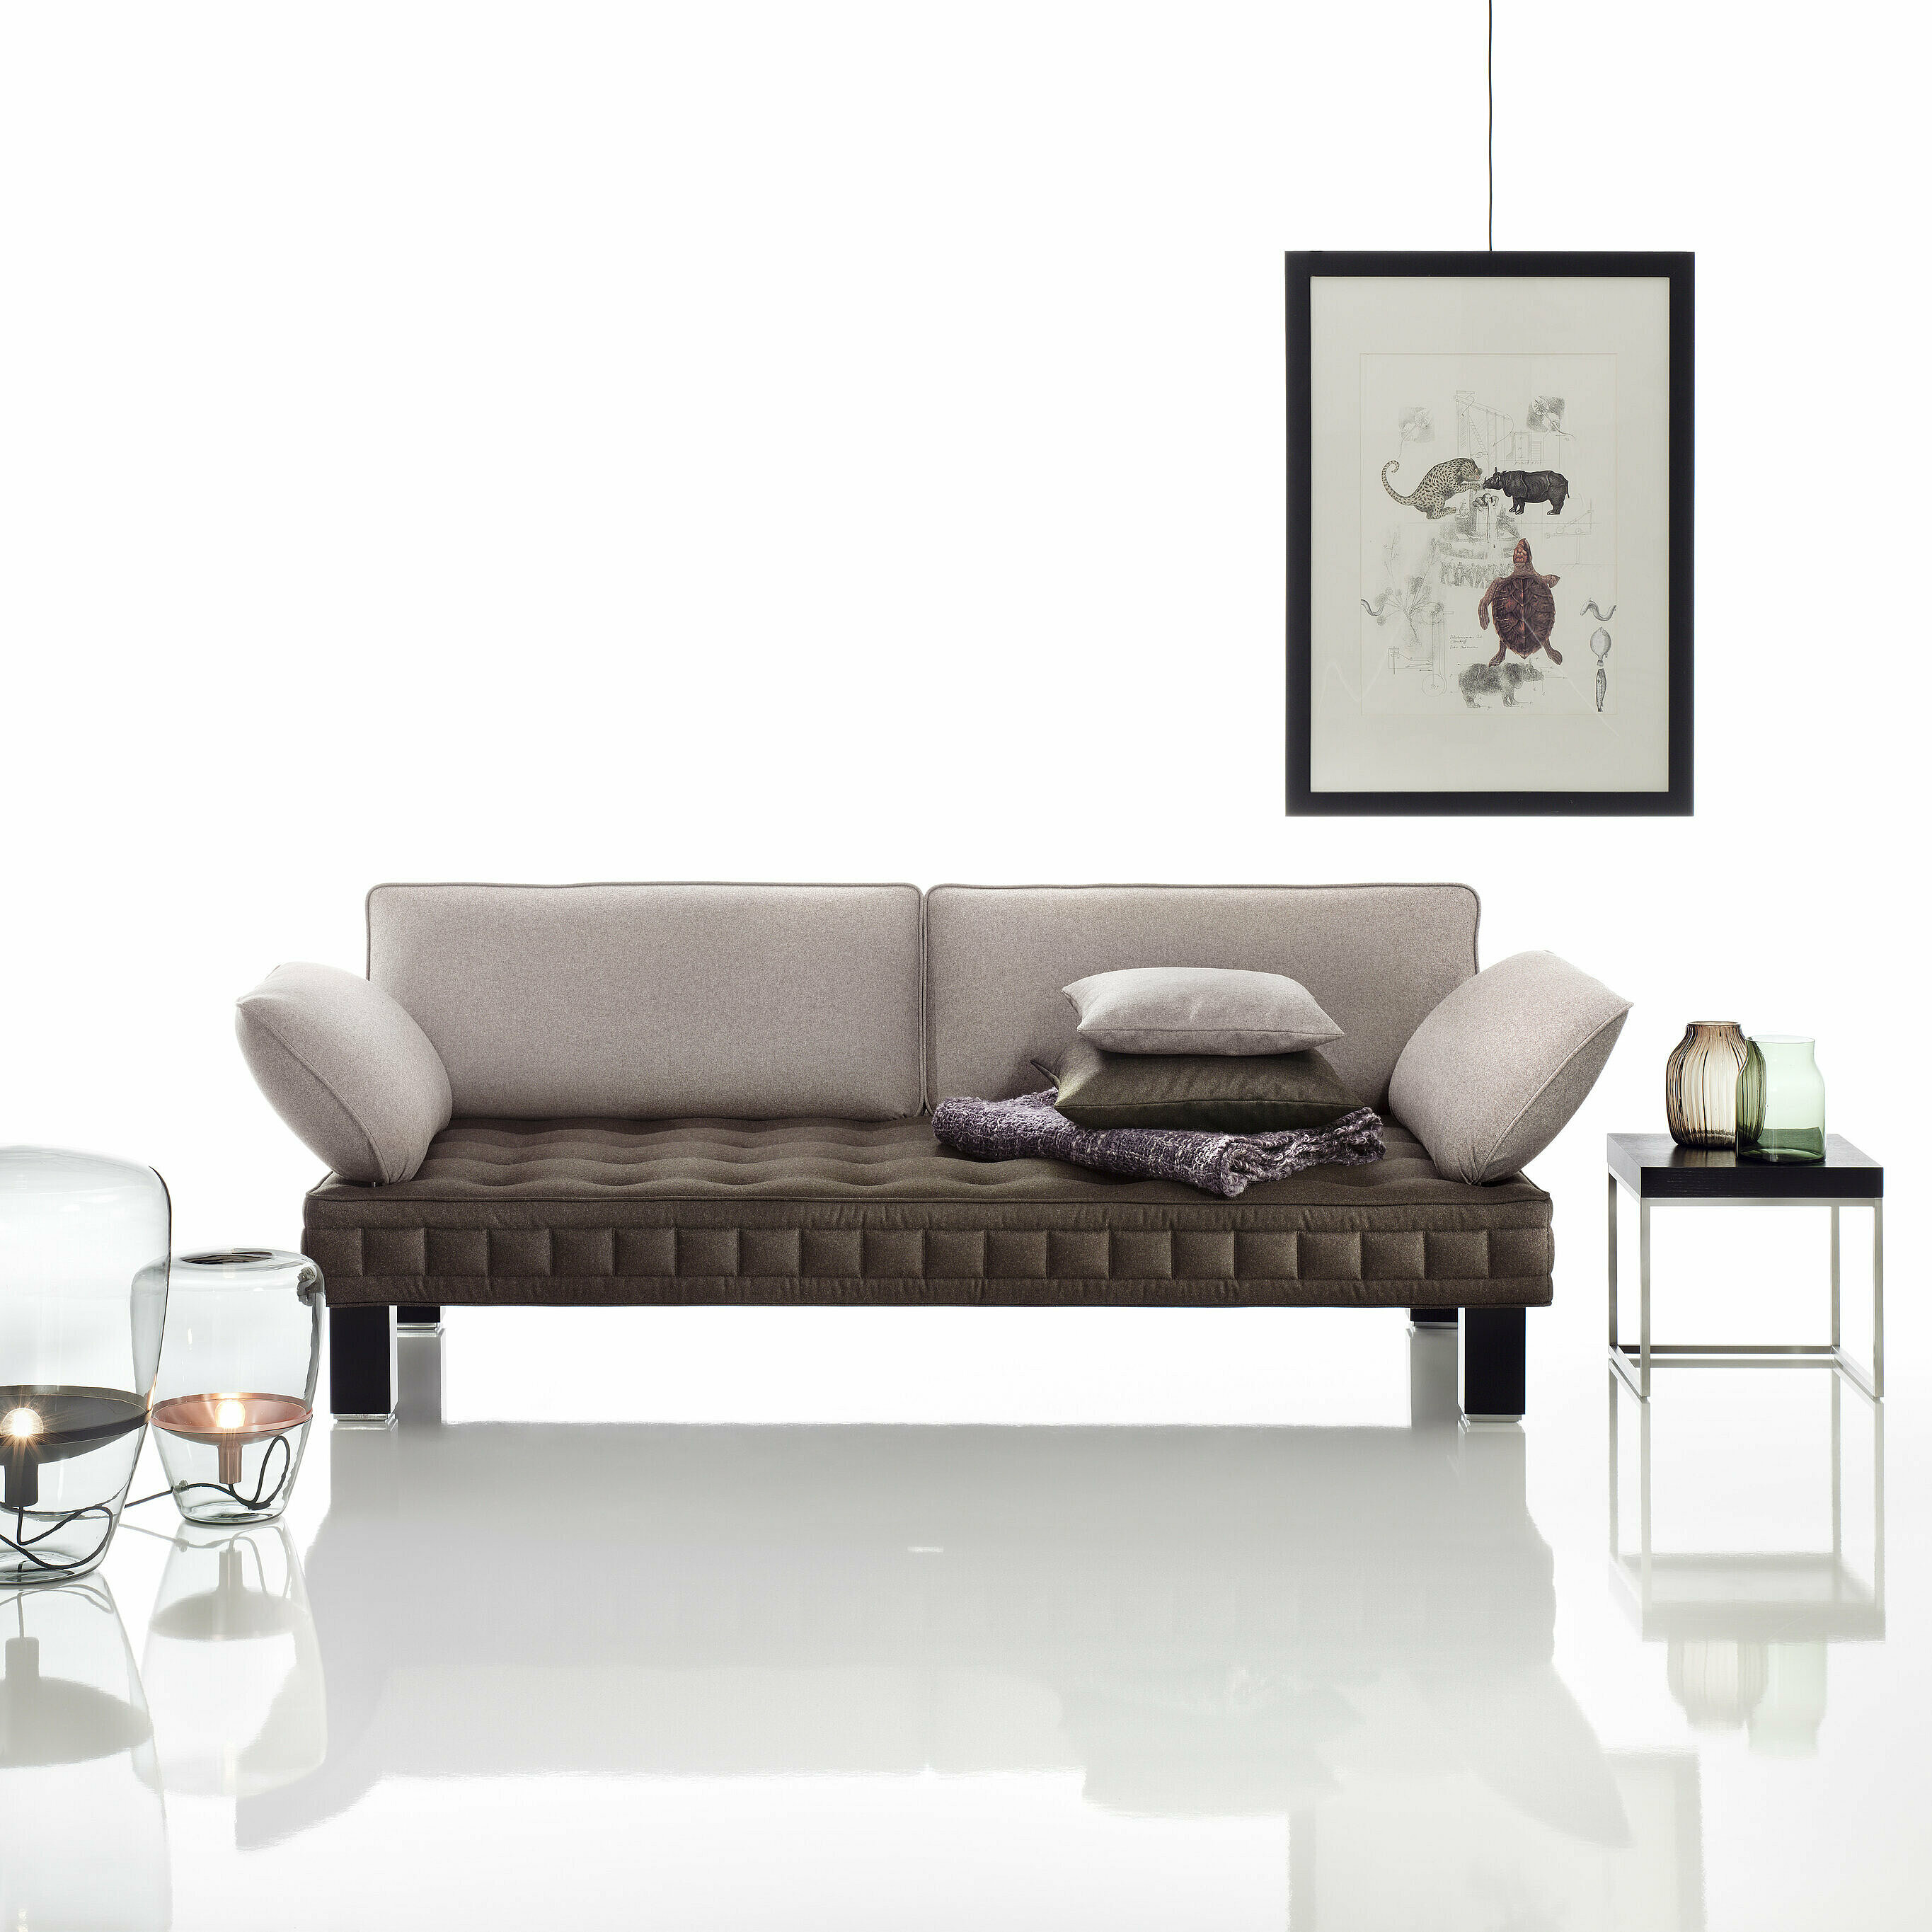 Materassi Sofa zweifärbig, Arm- und Rückenlehnen in Loden stone, Sitzfläche in Loden Terra